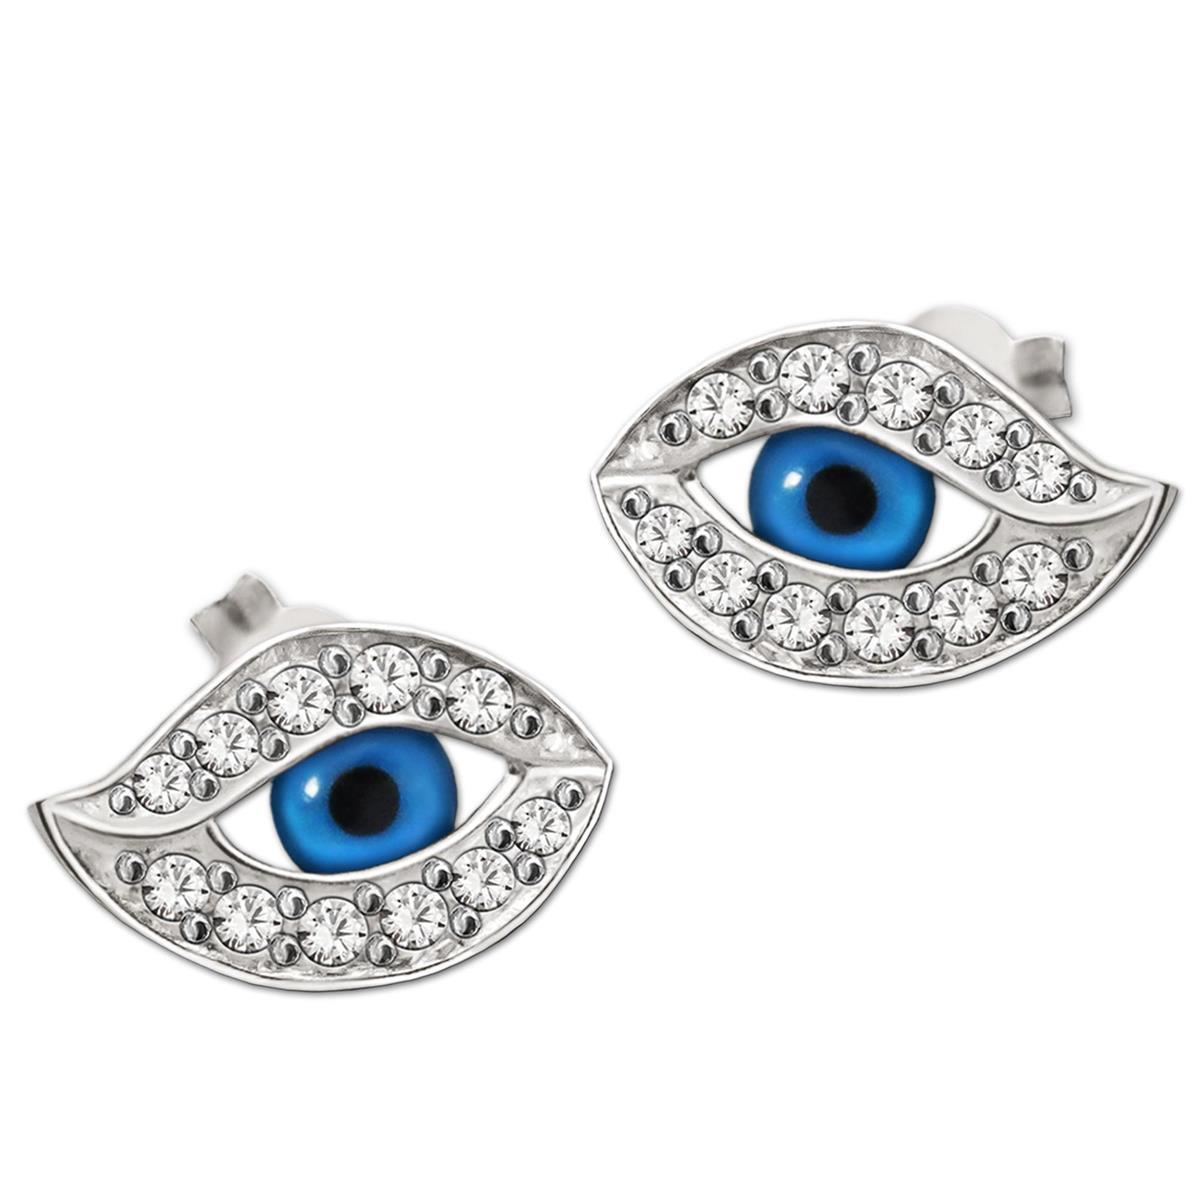 Silberne Ohrstecker Mini Auge 10 x 6 mm blau mit Zirkonias weiß glänzend STERLING SILBER 925